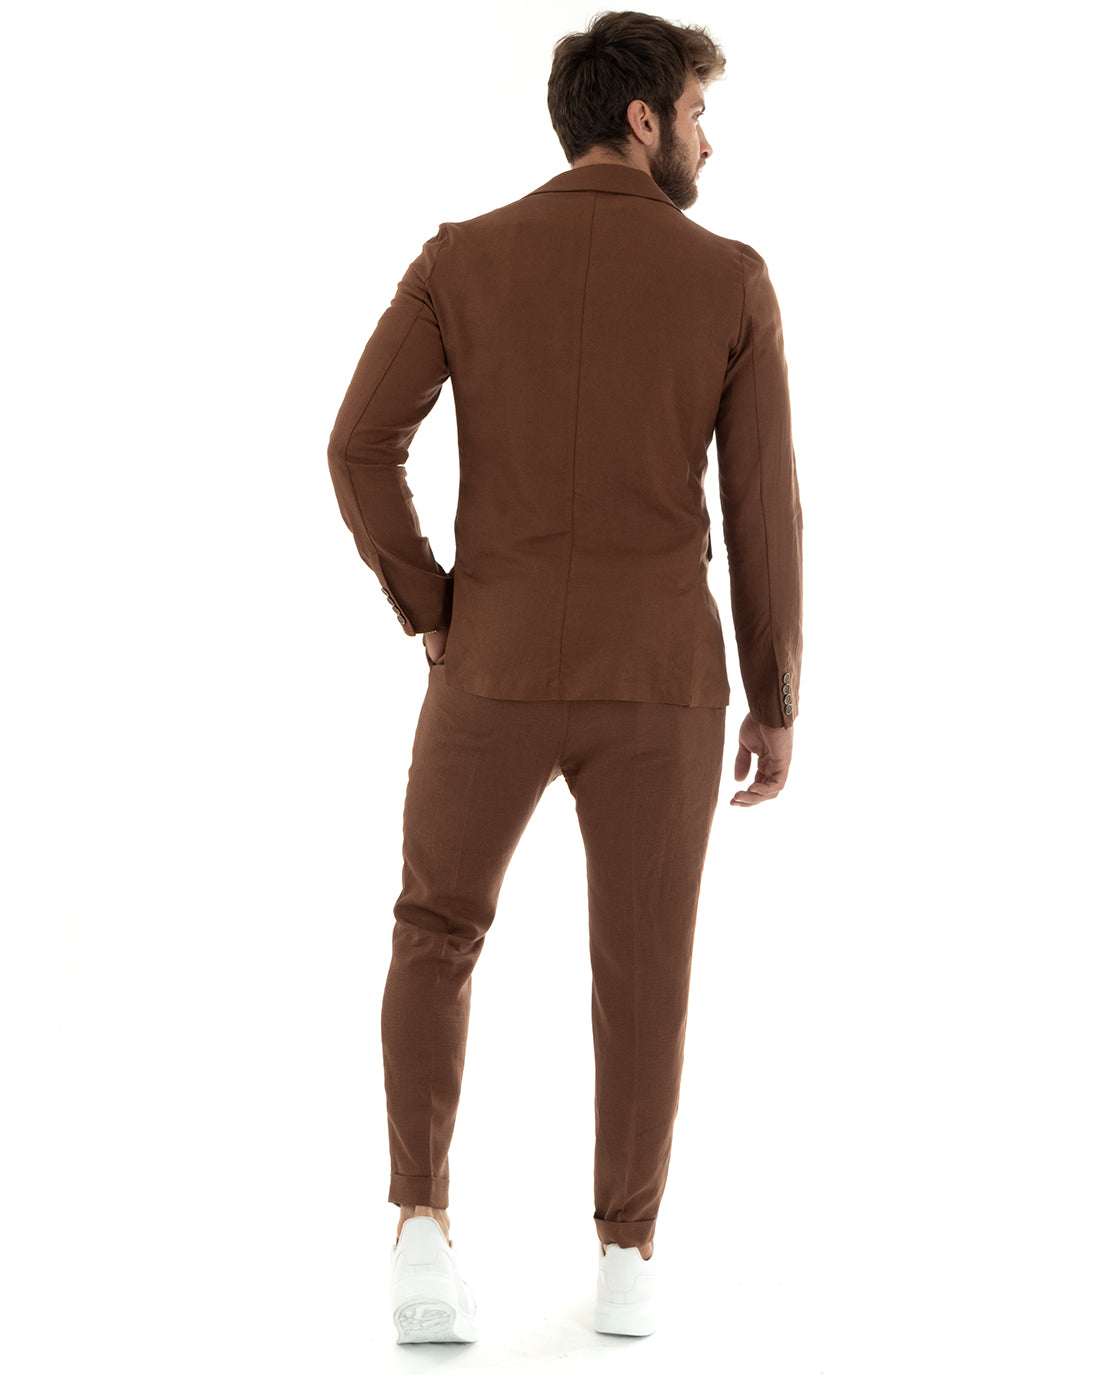 Men's Suit Linen Suit Saharan Jacket Solid Color Trousers Tobacco Casual GIOSAL-OU2337A